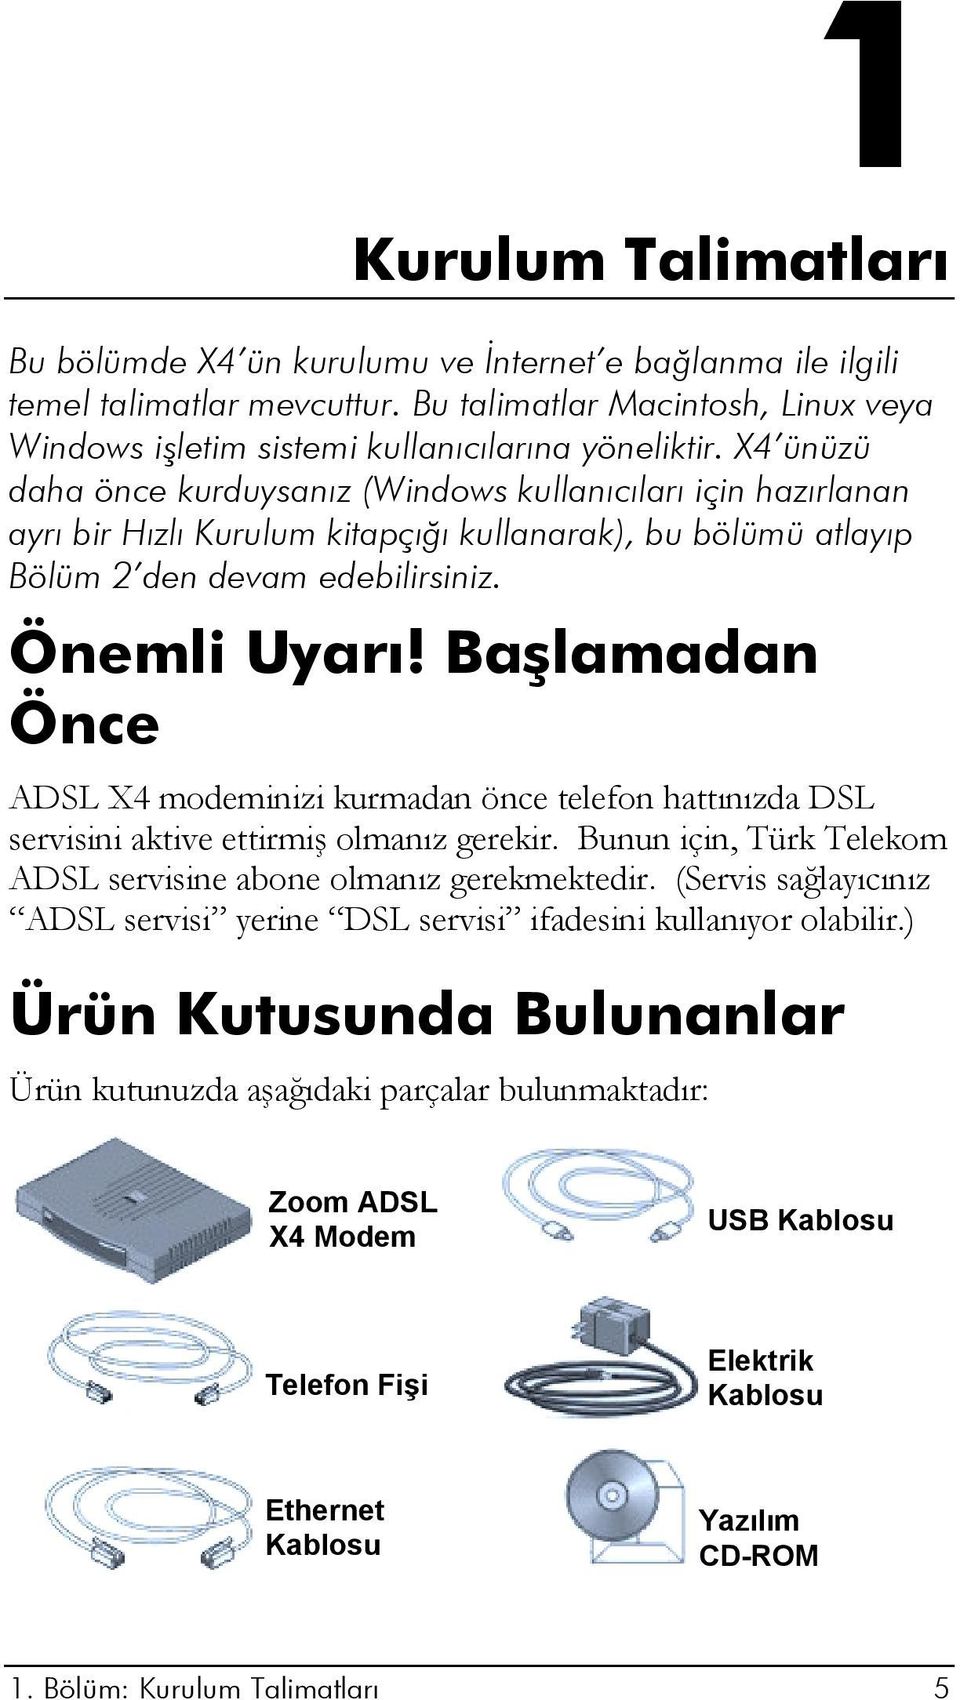 Başlamadan Önce ADSL X4 modeminizi kurmadan önce telefon hattınızda DSL servisini aktive ettirmiş olmanız gerekir. Bunun için, Türk Telekom ADSL servisine abone olmanız gerekmektedir.